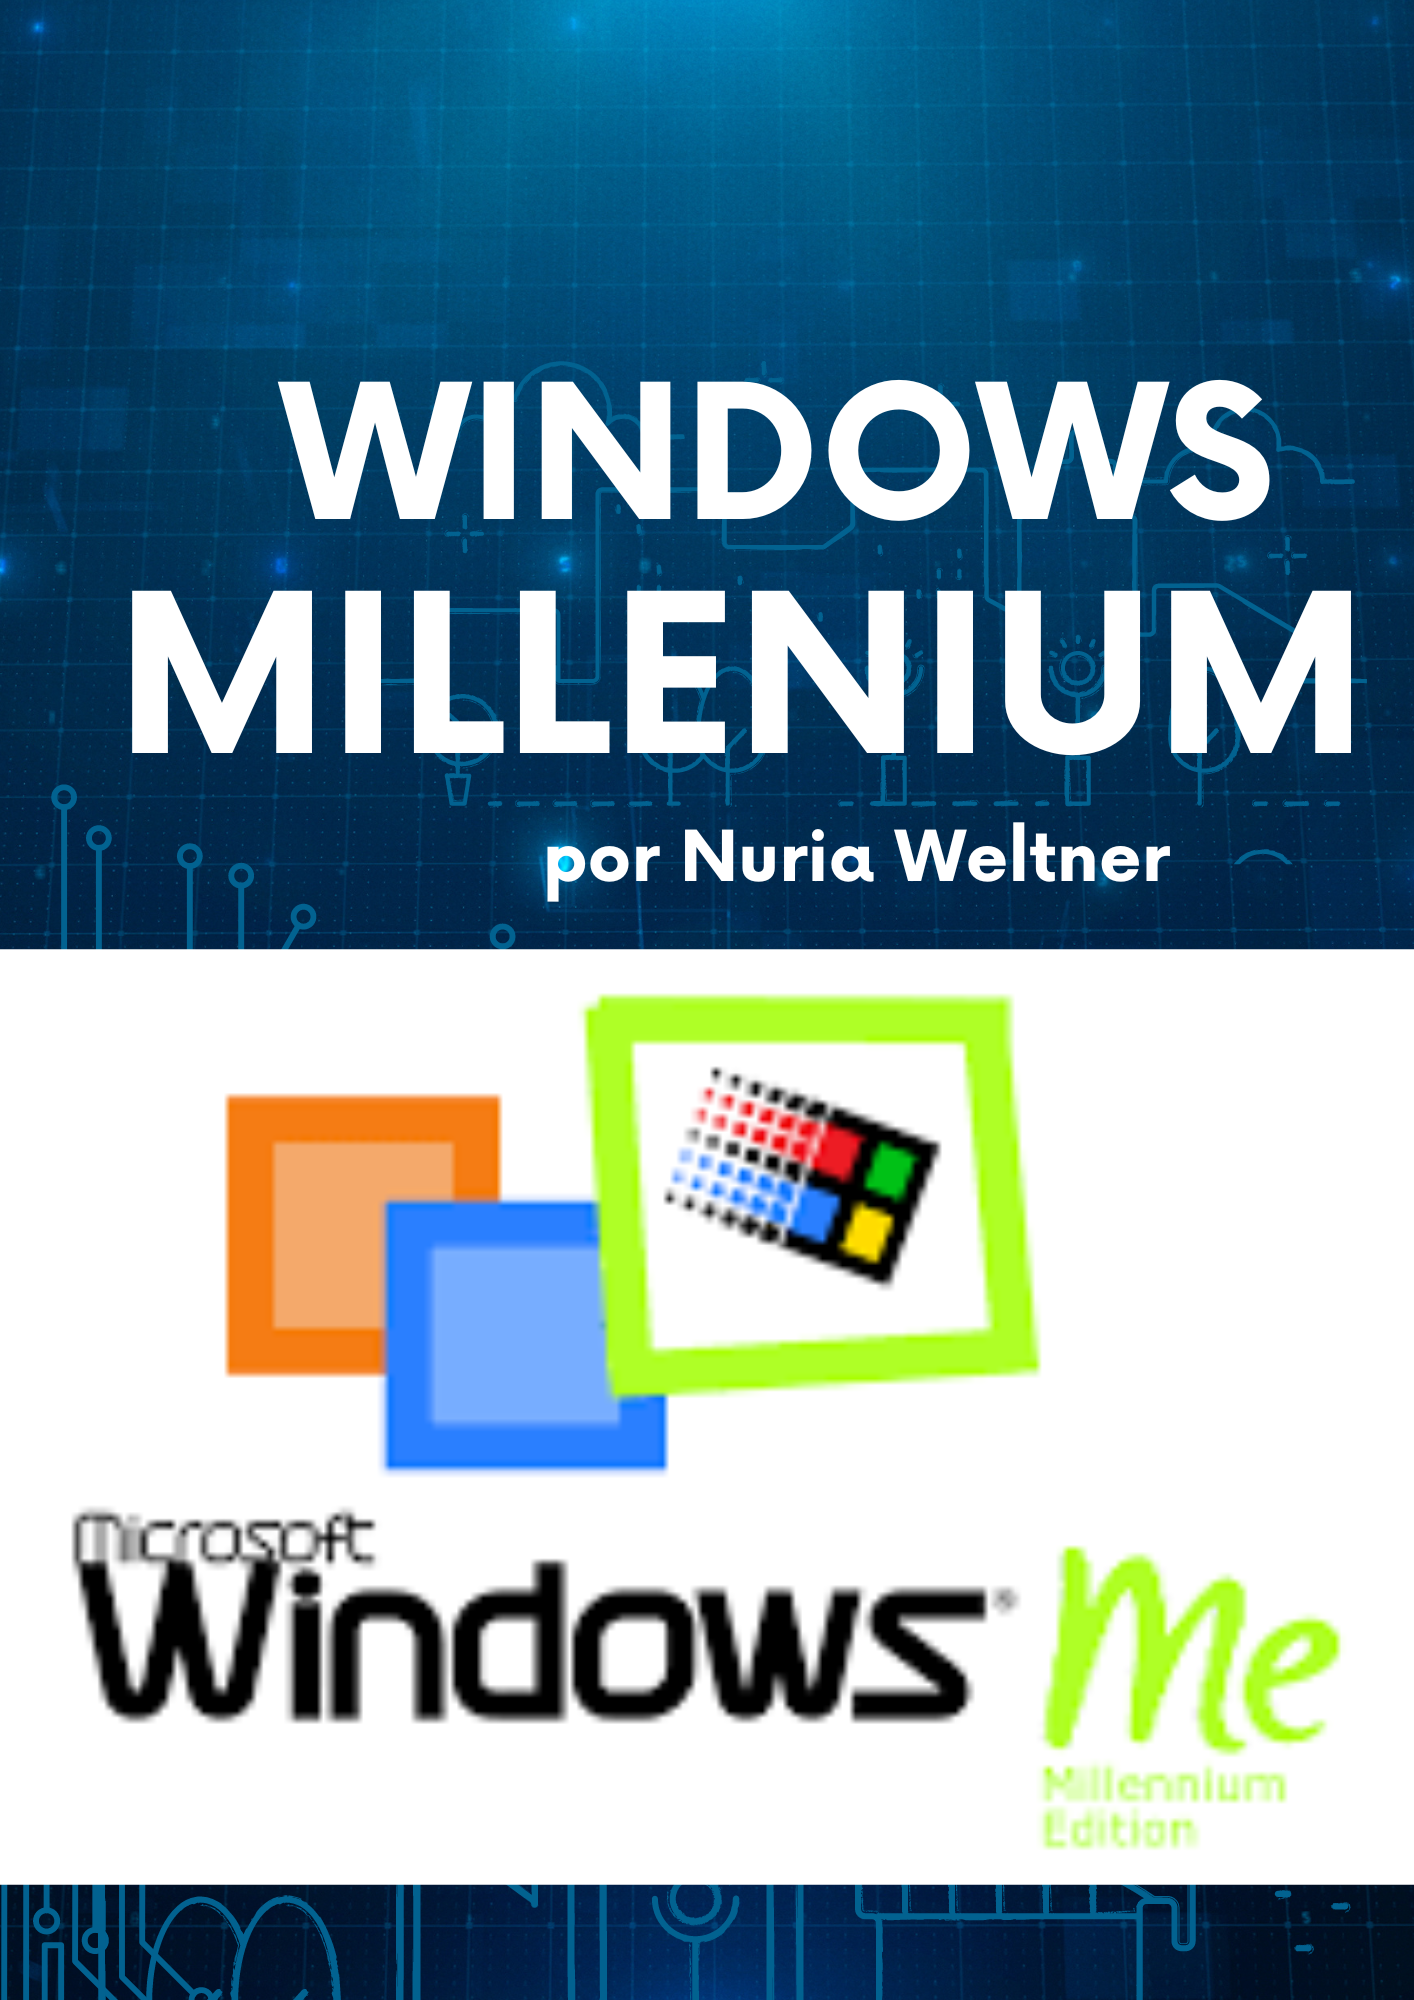 Libro: Windows Millenium por Nuria Weltner 